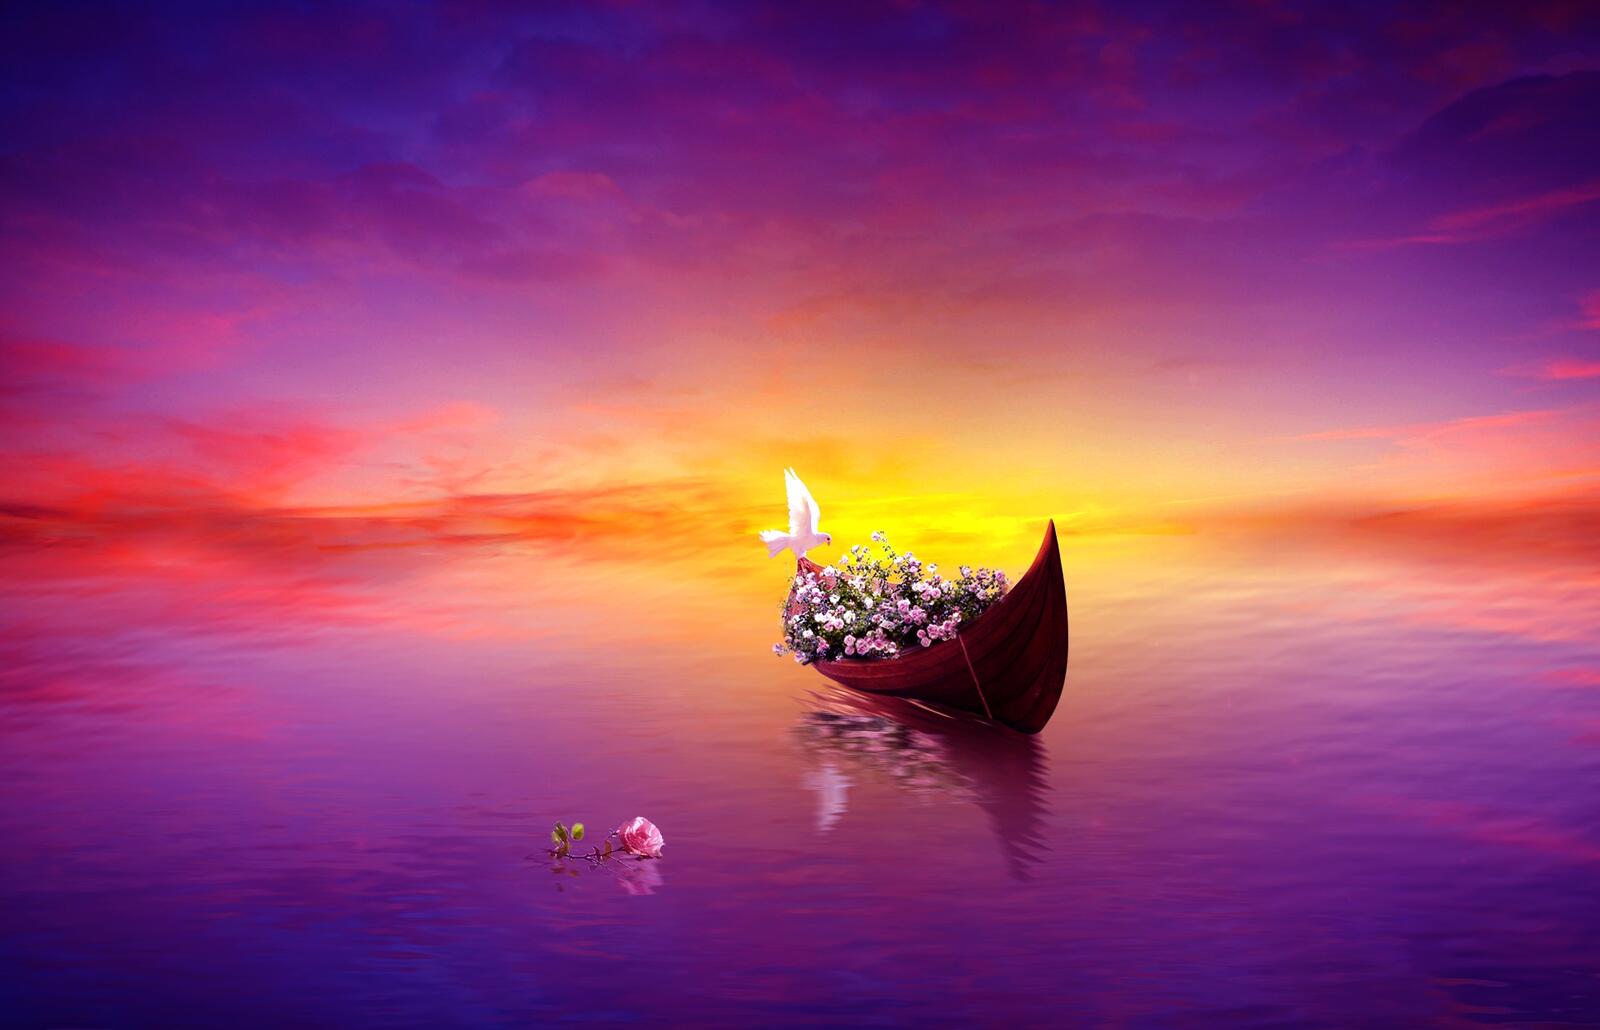 Бесплатное фото Рисунок лодки с цветами и белым голубем